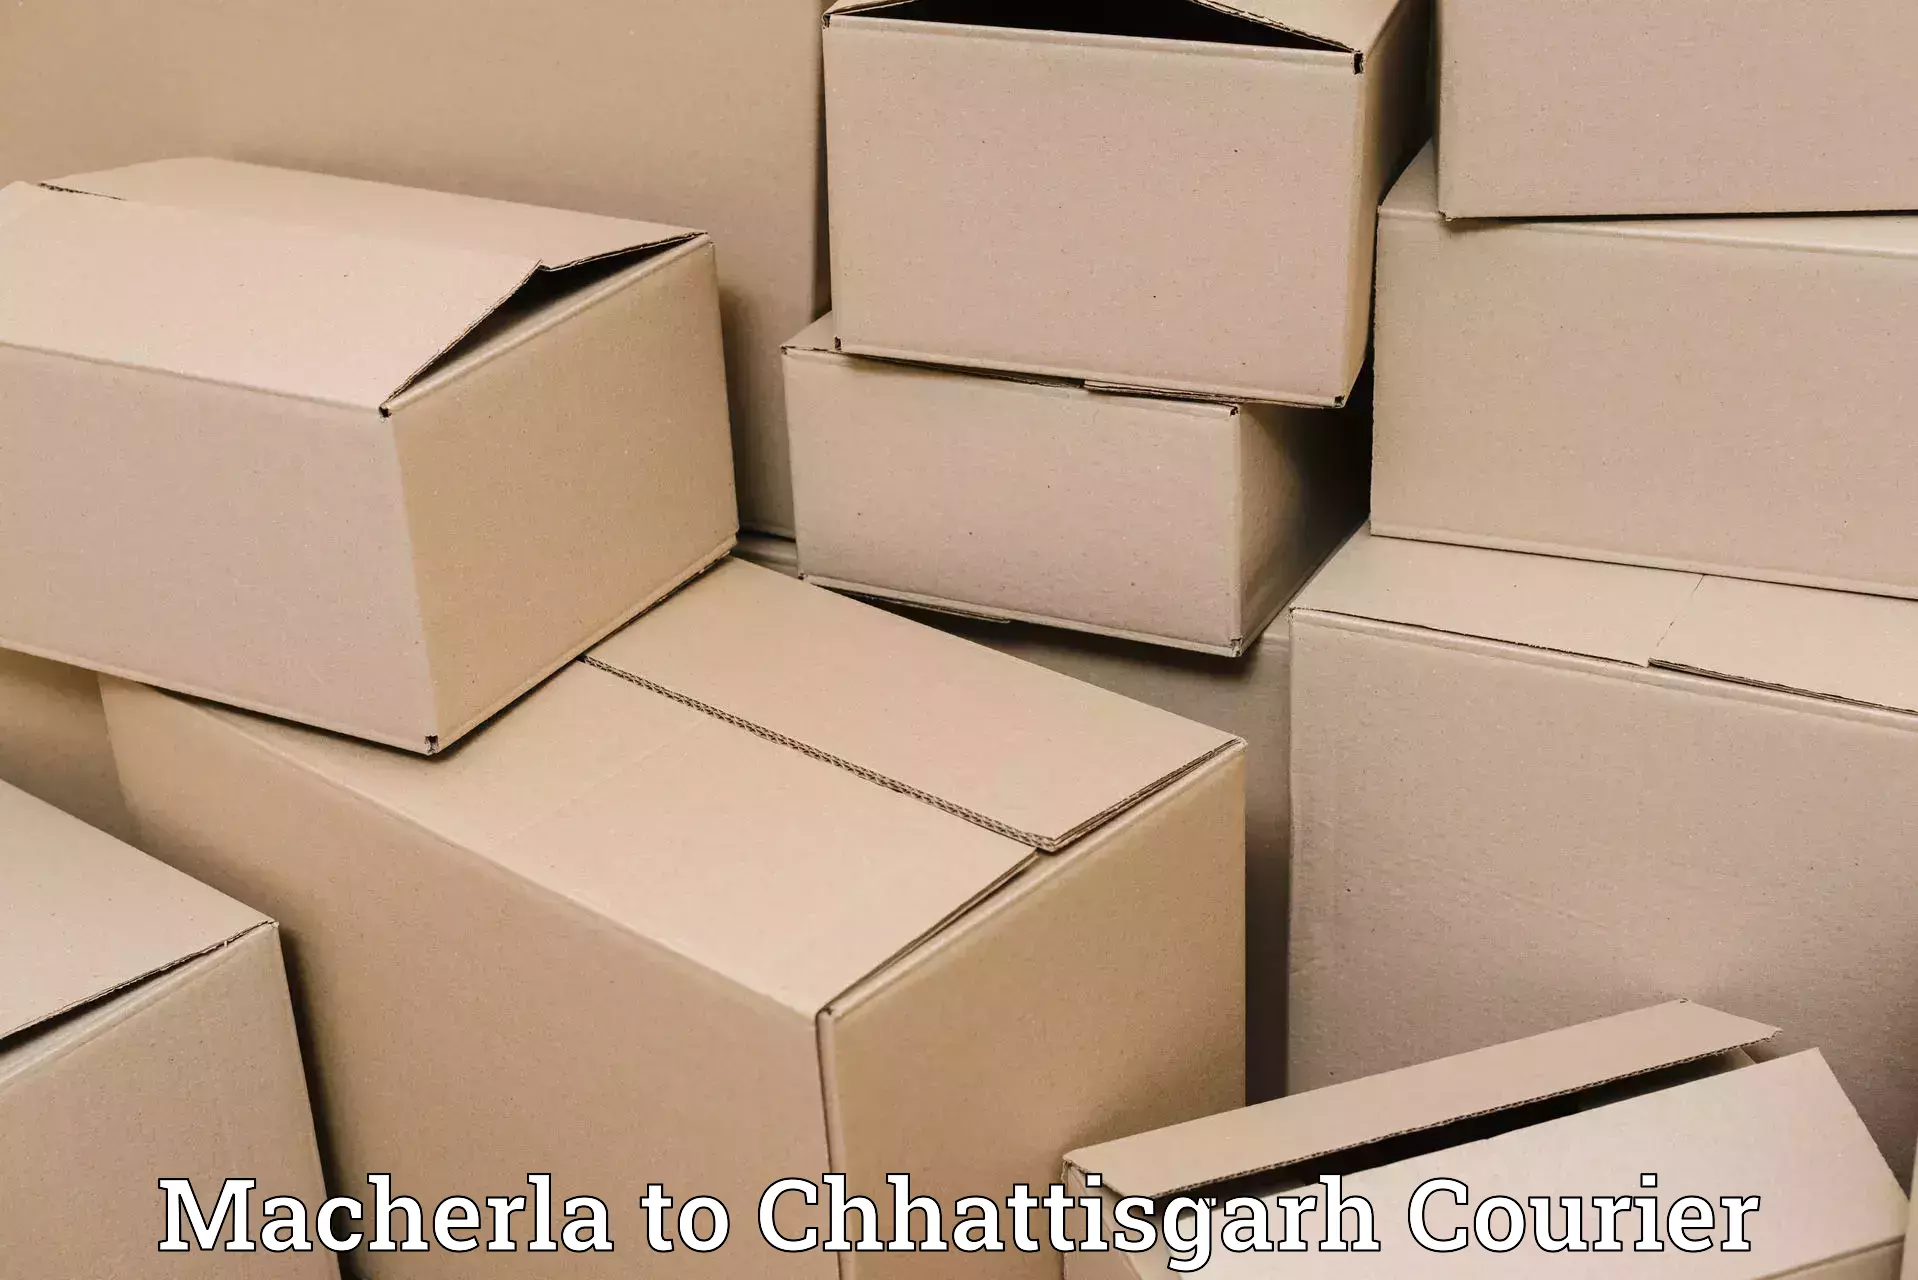 High-speed parcel service Macherla to Chhattisgarh